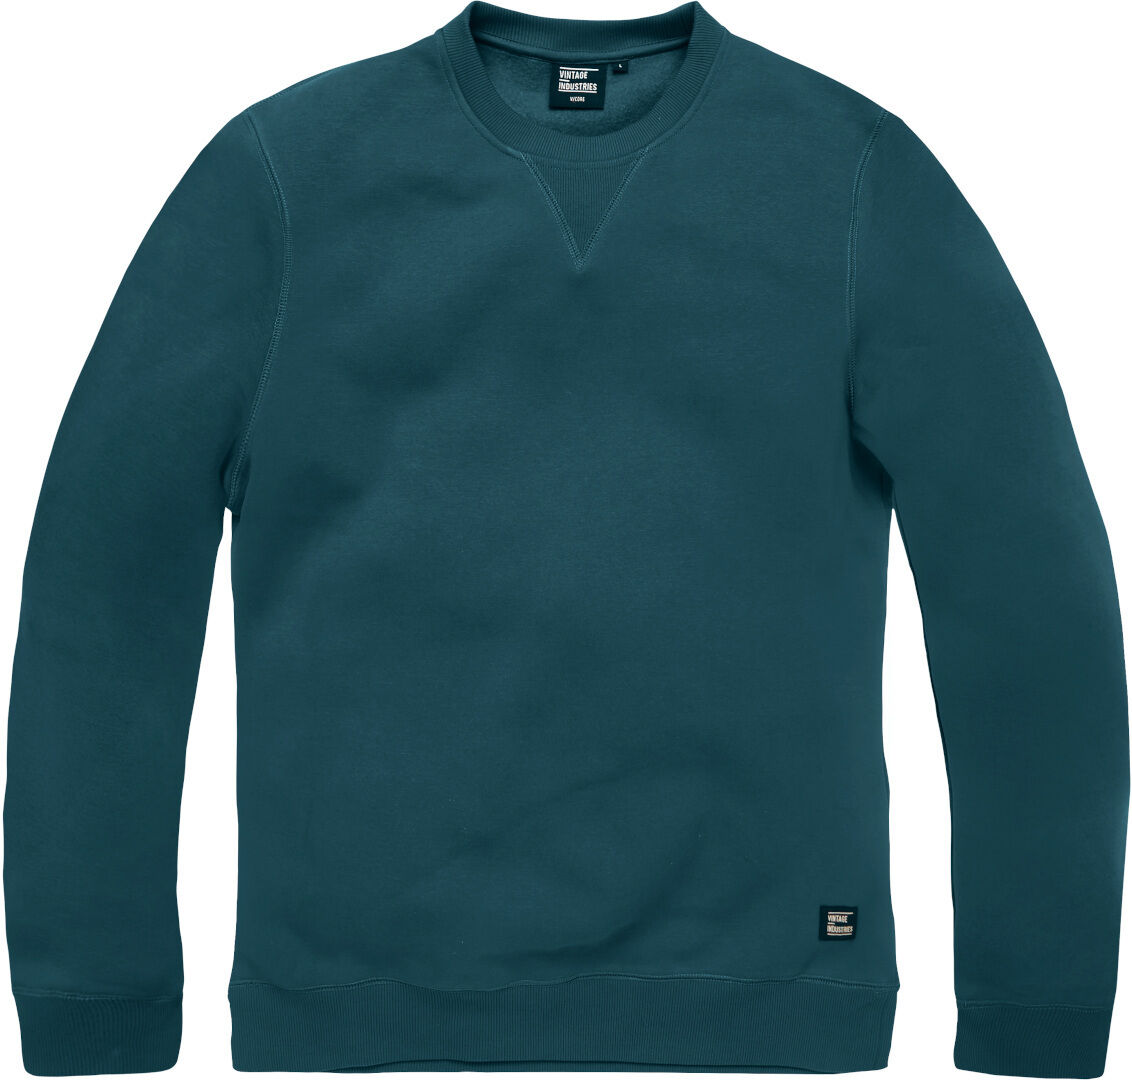 Vintage Industries Greeley Crewneck Sweatshirt S Blau